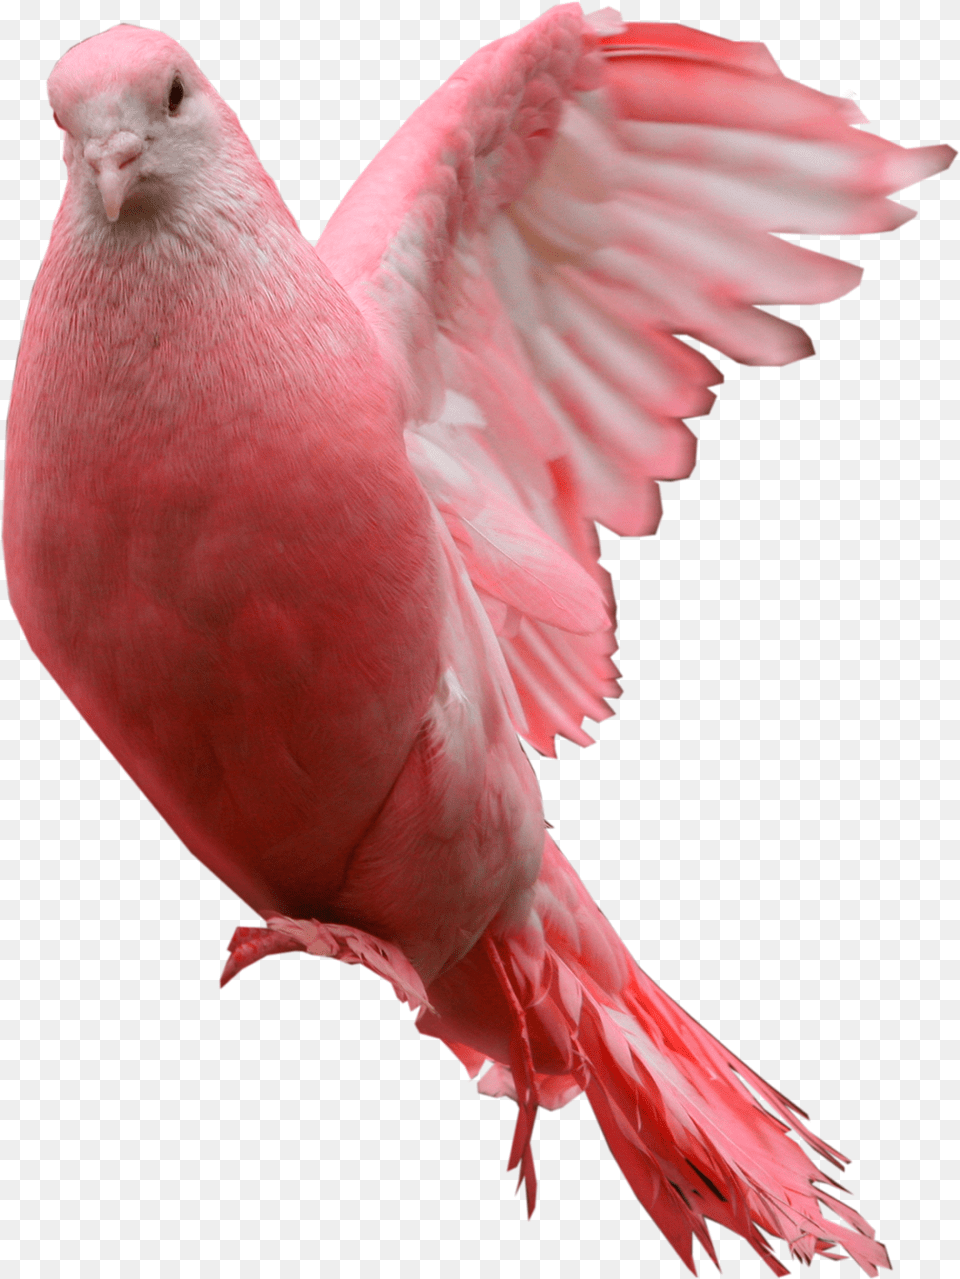 Pigeon, Animal, Bird Png Image